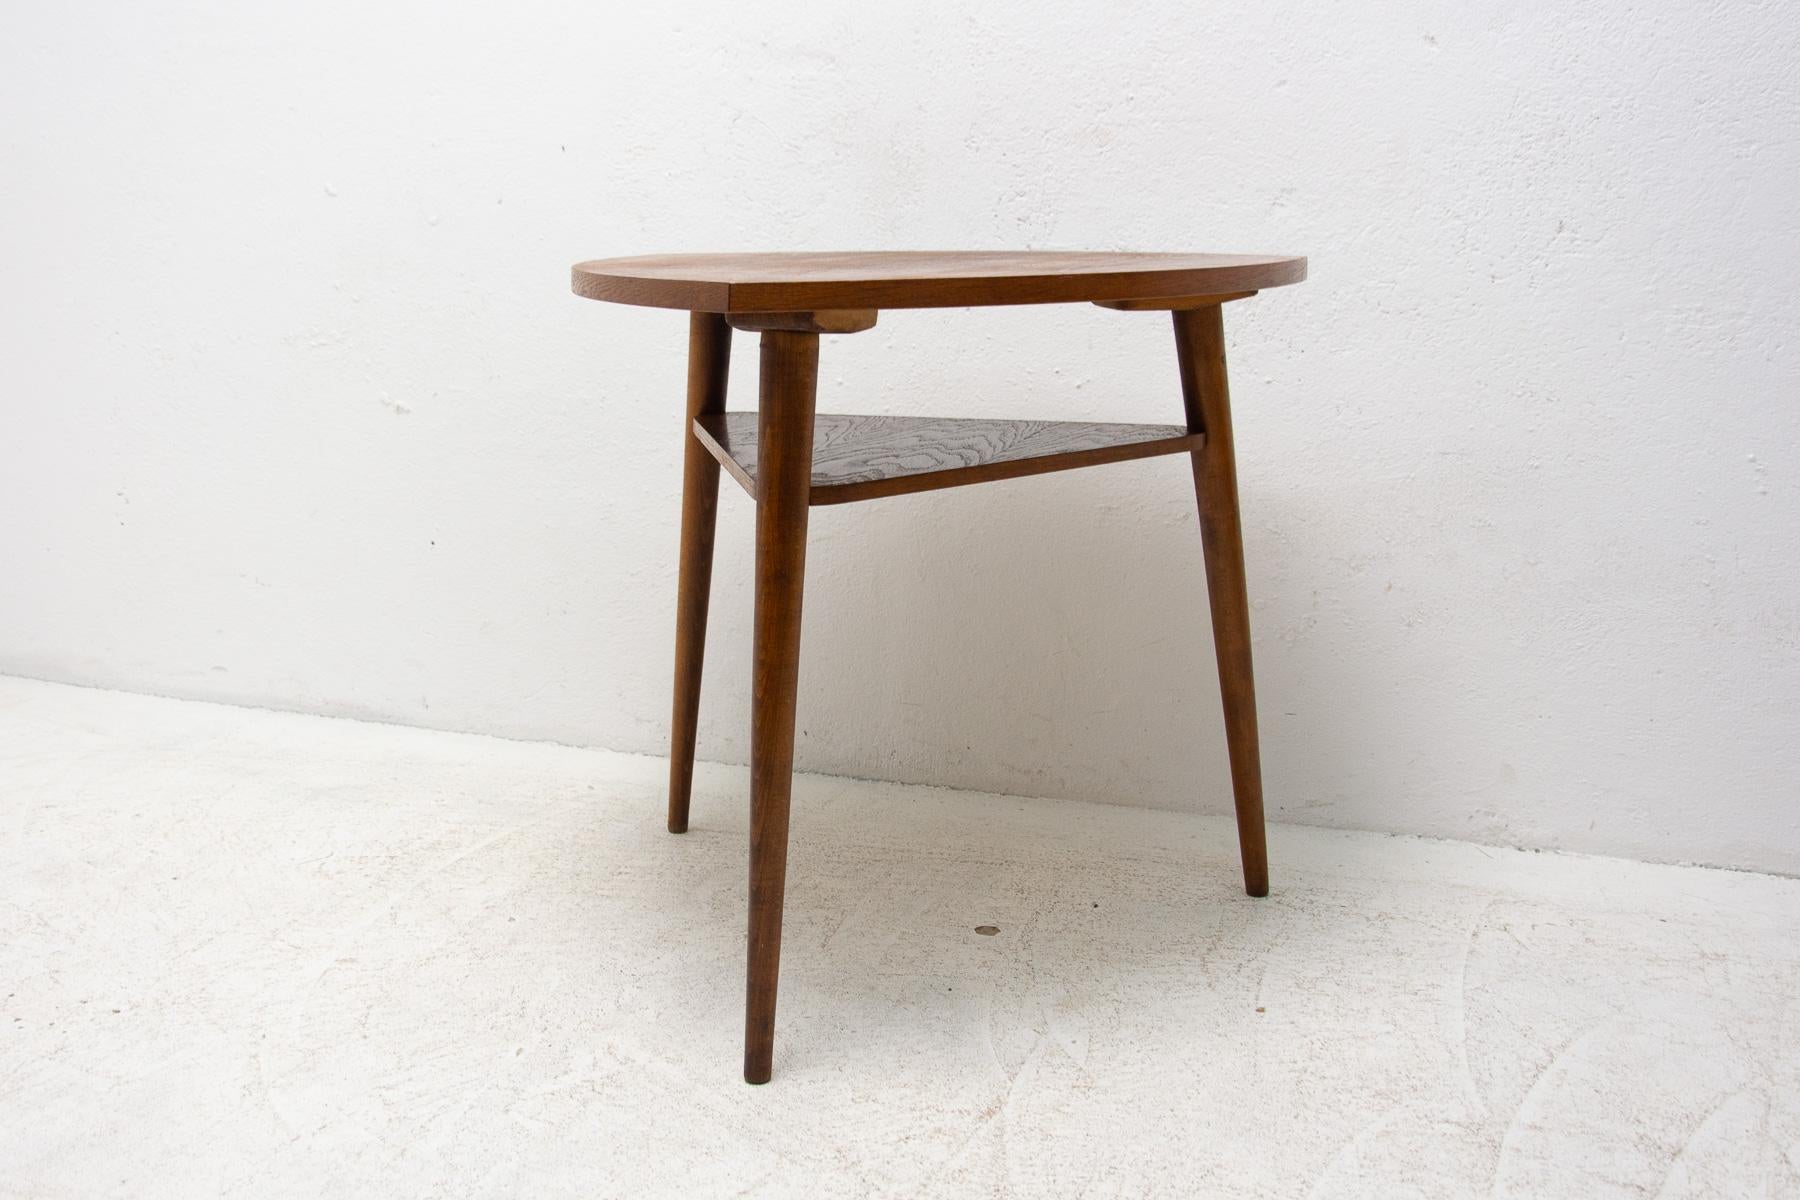 Cette table basse du milieu du siècle a été fabriquée dans l'ancienne Tchécoslovaquie dans les années 1960. Il est fait de bois de chêne.

Associé à l'exposition de renommée mondiale EXPO 58 à Bruxelles. En bonne condition Vintage, montrant des